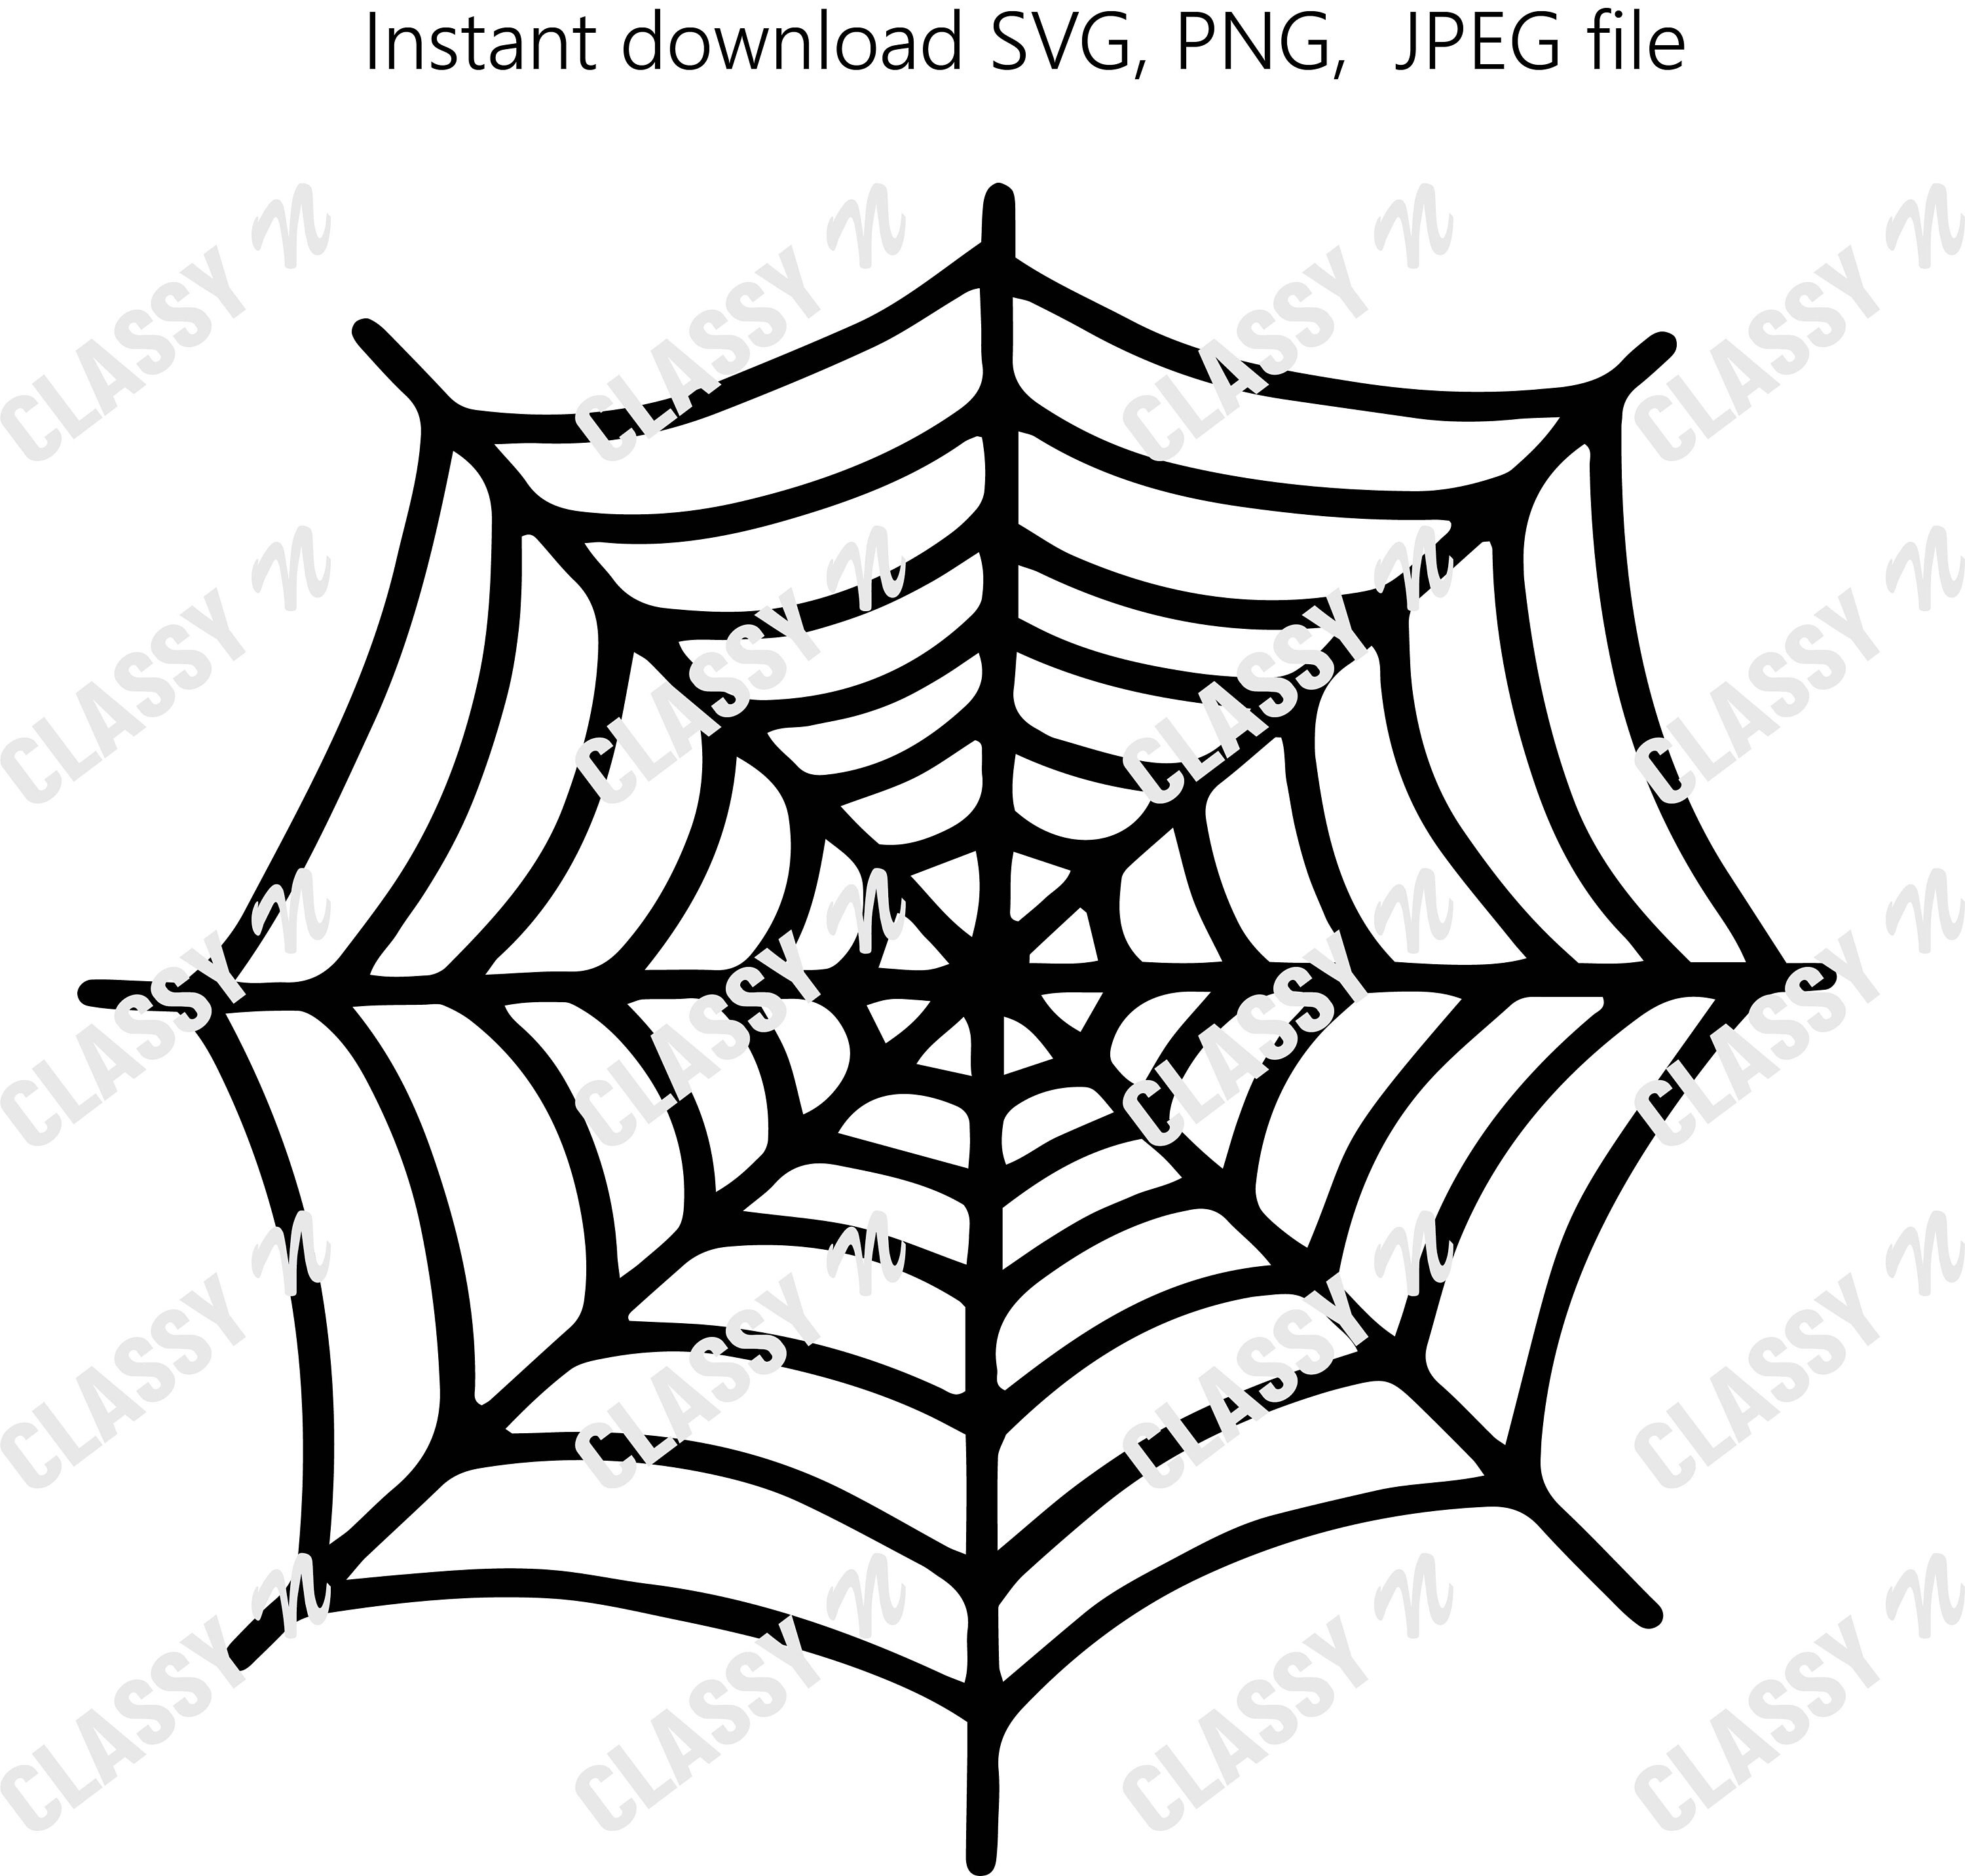 Black spiders Svg Png Jpeg file Instant download | Etsy